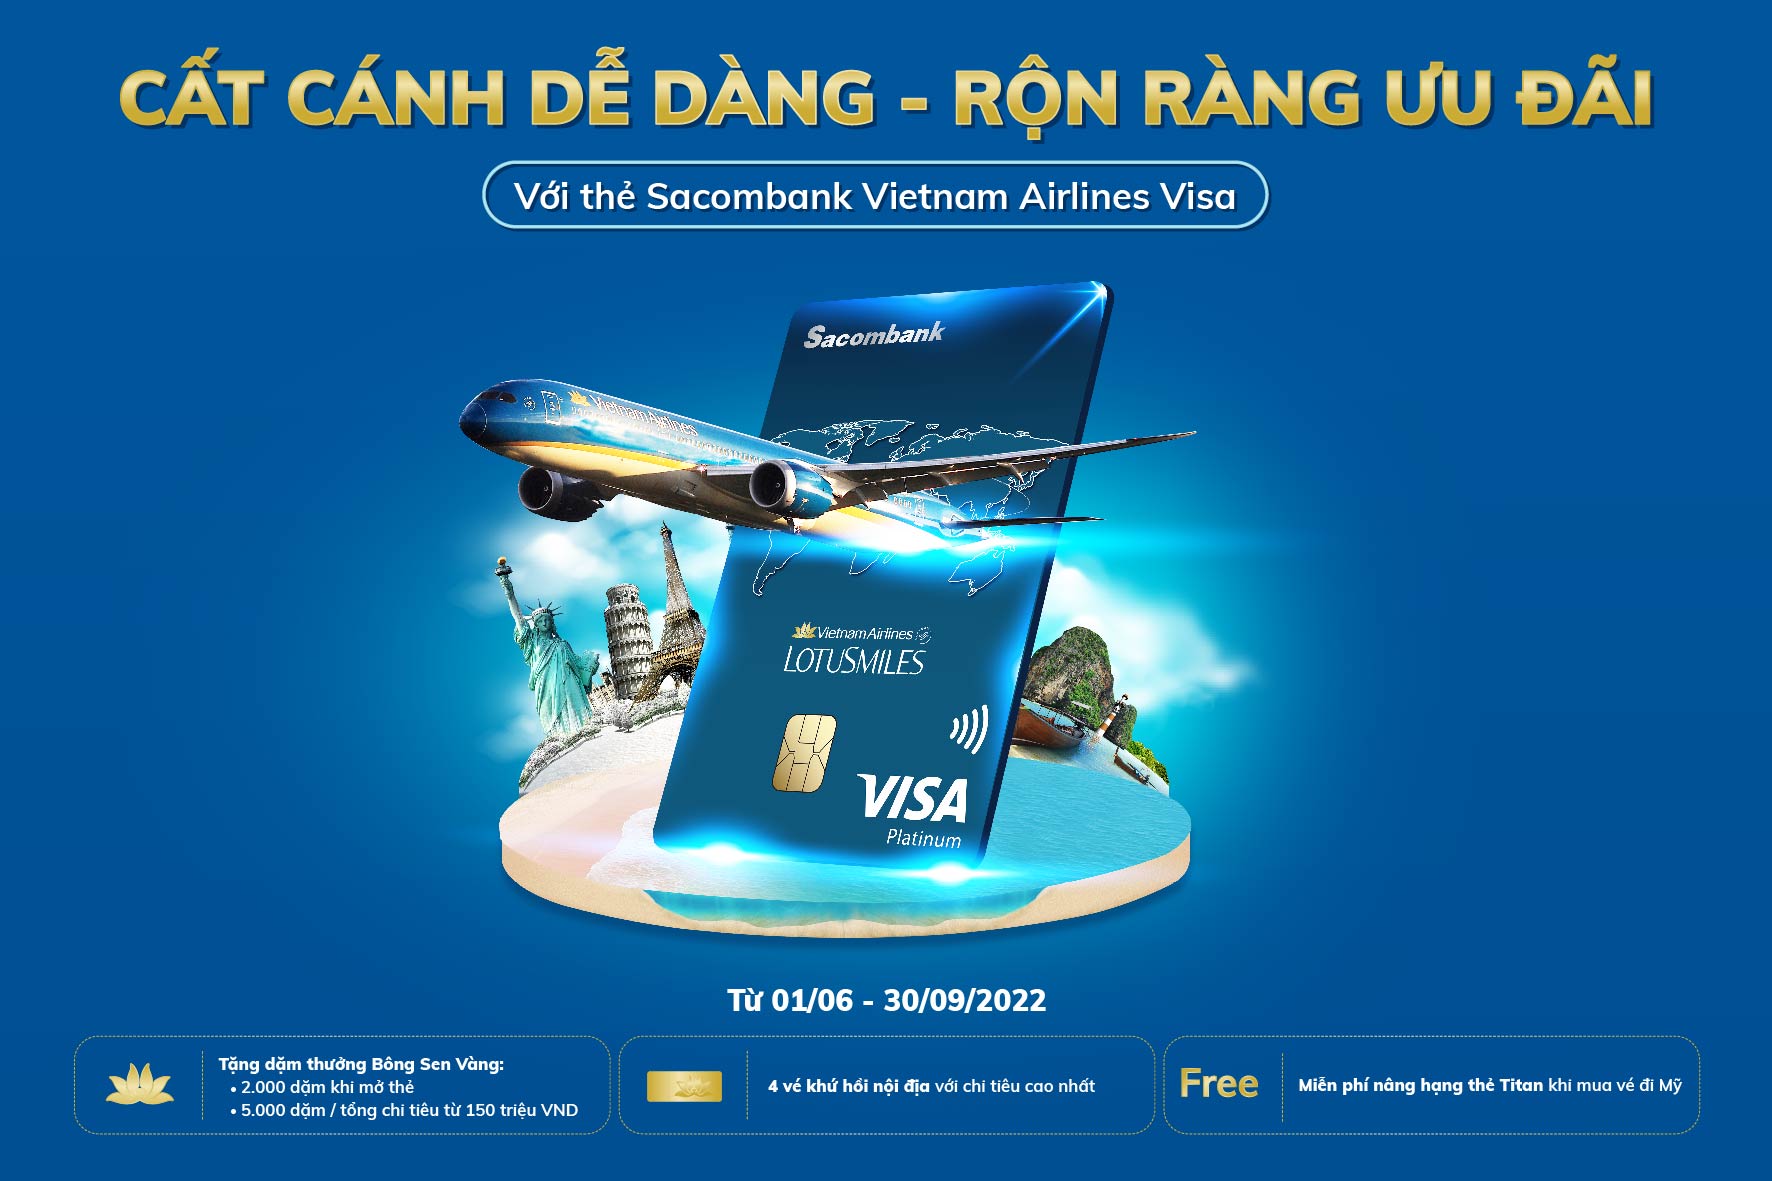 “Cất cánh dễ dàng - rộn ràng ưu đãi” cùng thẻ Sacombank Vietnam Airlines